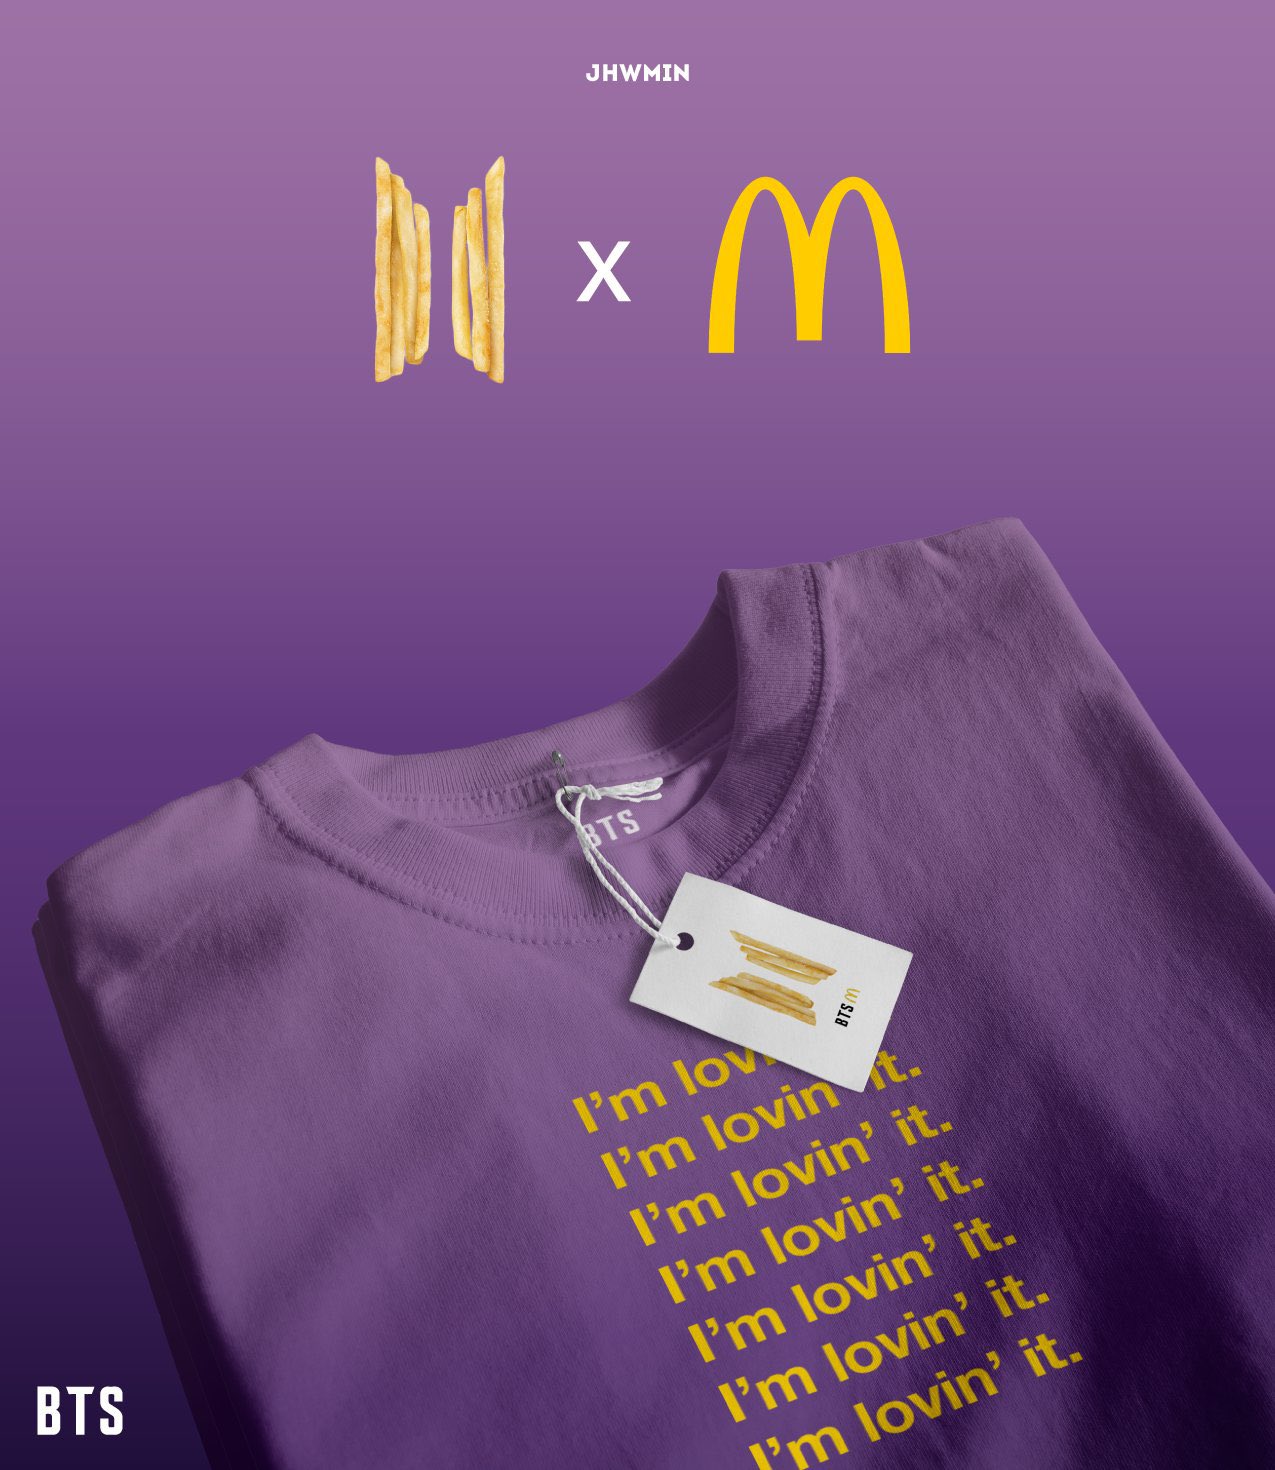 BTS Merch khi kết hợp với McDonald phiên bản do fan tự sáng tạo ra và chỉ có trên bản vẽ.